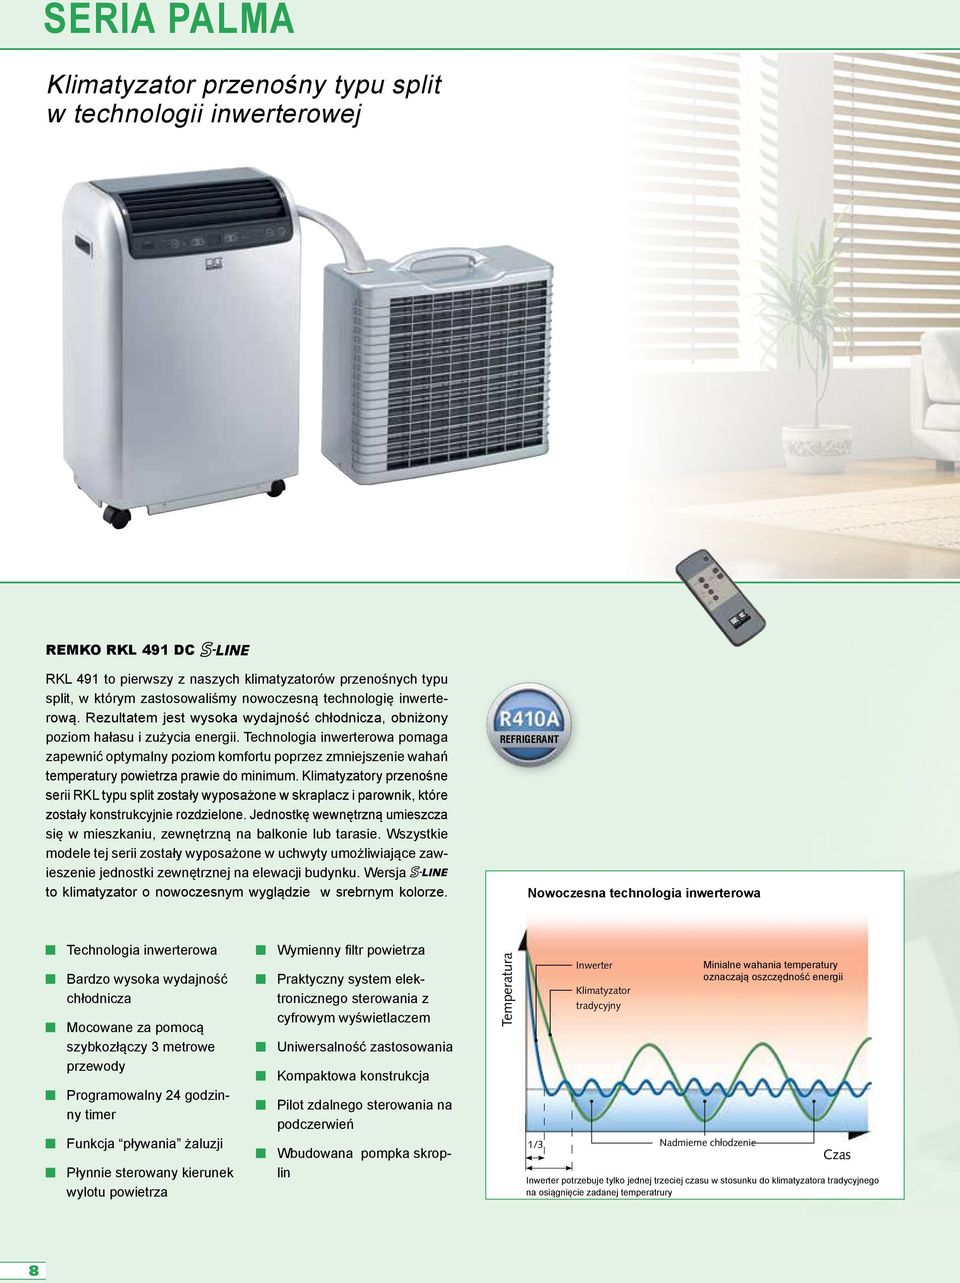 Technologia inwerterowa pomaga zapewnić optymalny poziom komfortu poprzez zmniejszenie wahań temperatury powietrza prawie do minimum.